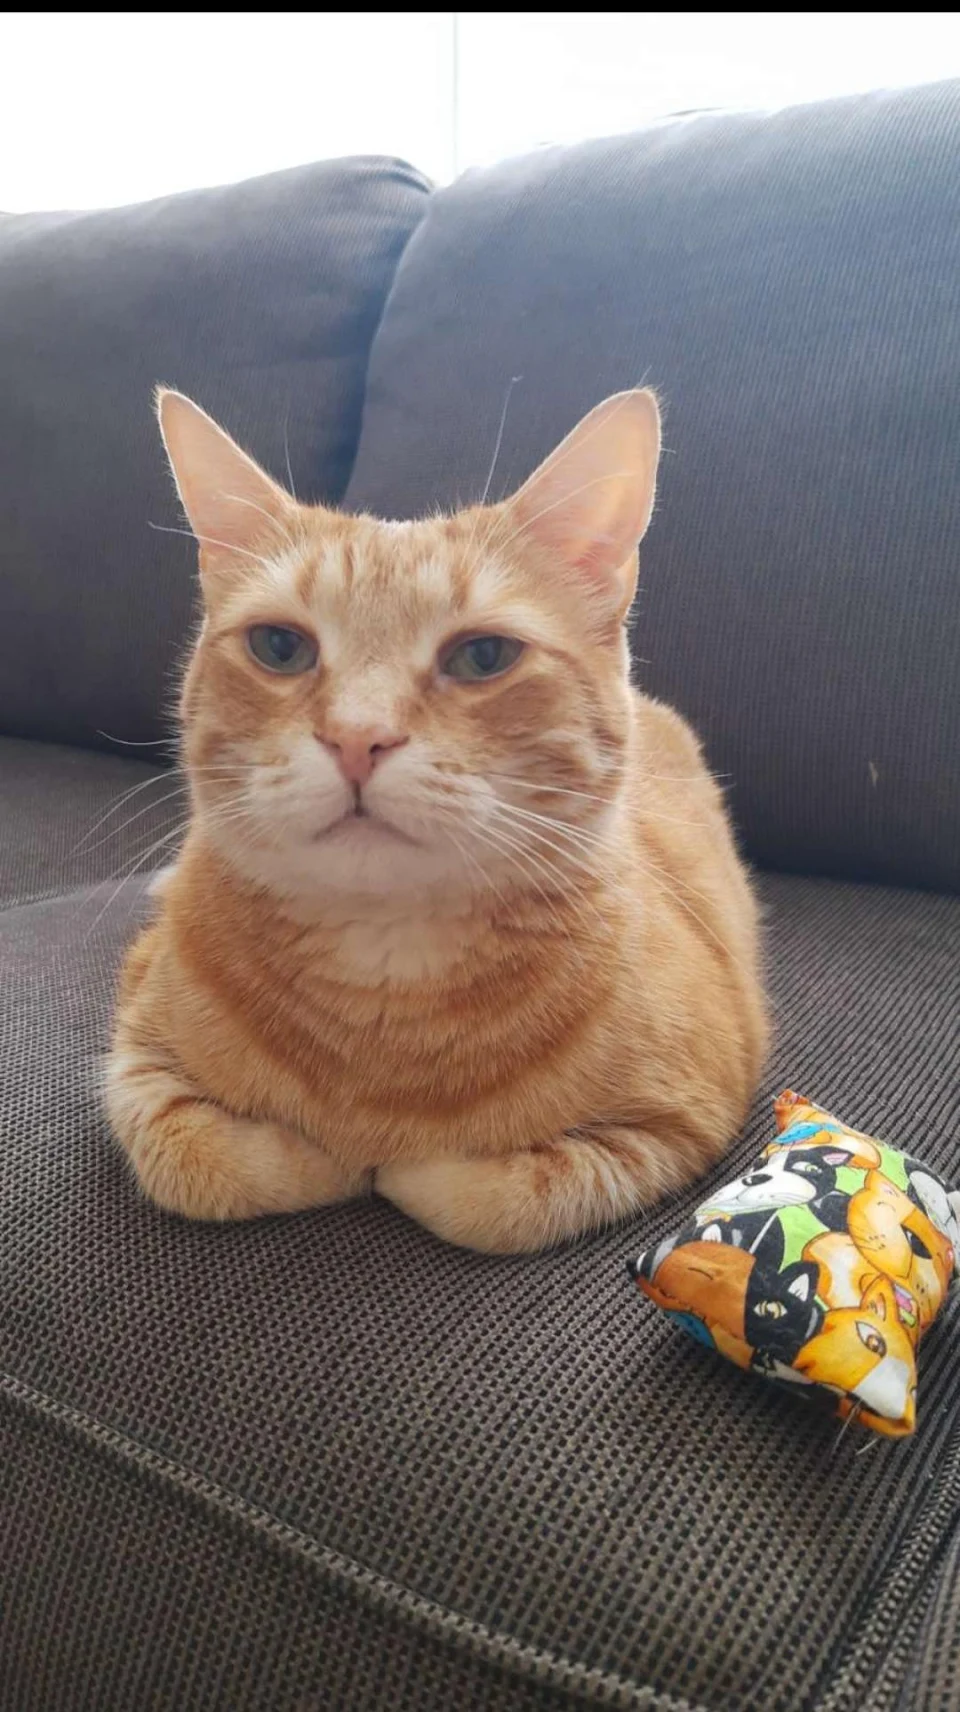 Orange Loaf